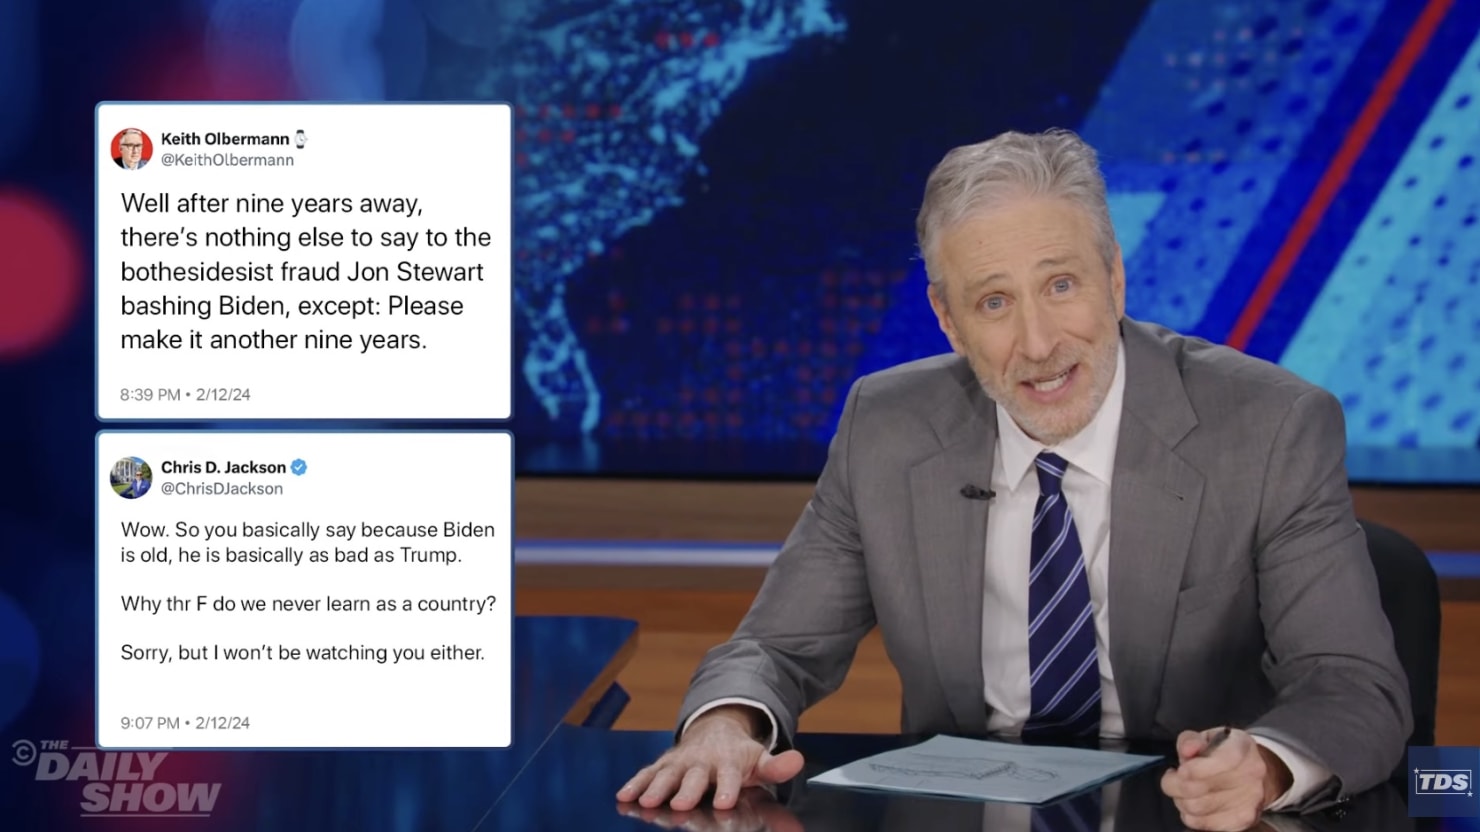 Jon Stewart risponde alle reazioni negative sul suo ritorno al “Daily Show”.